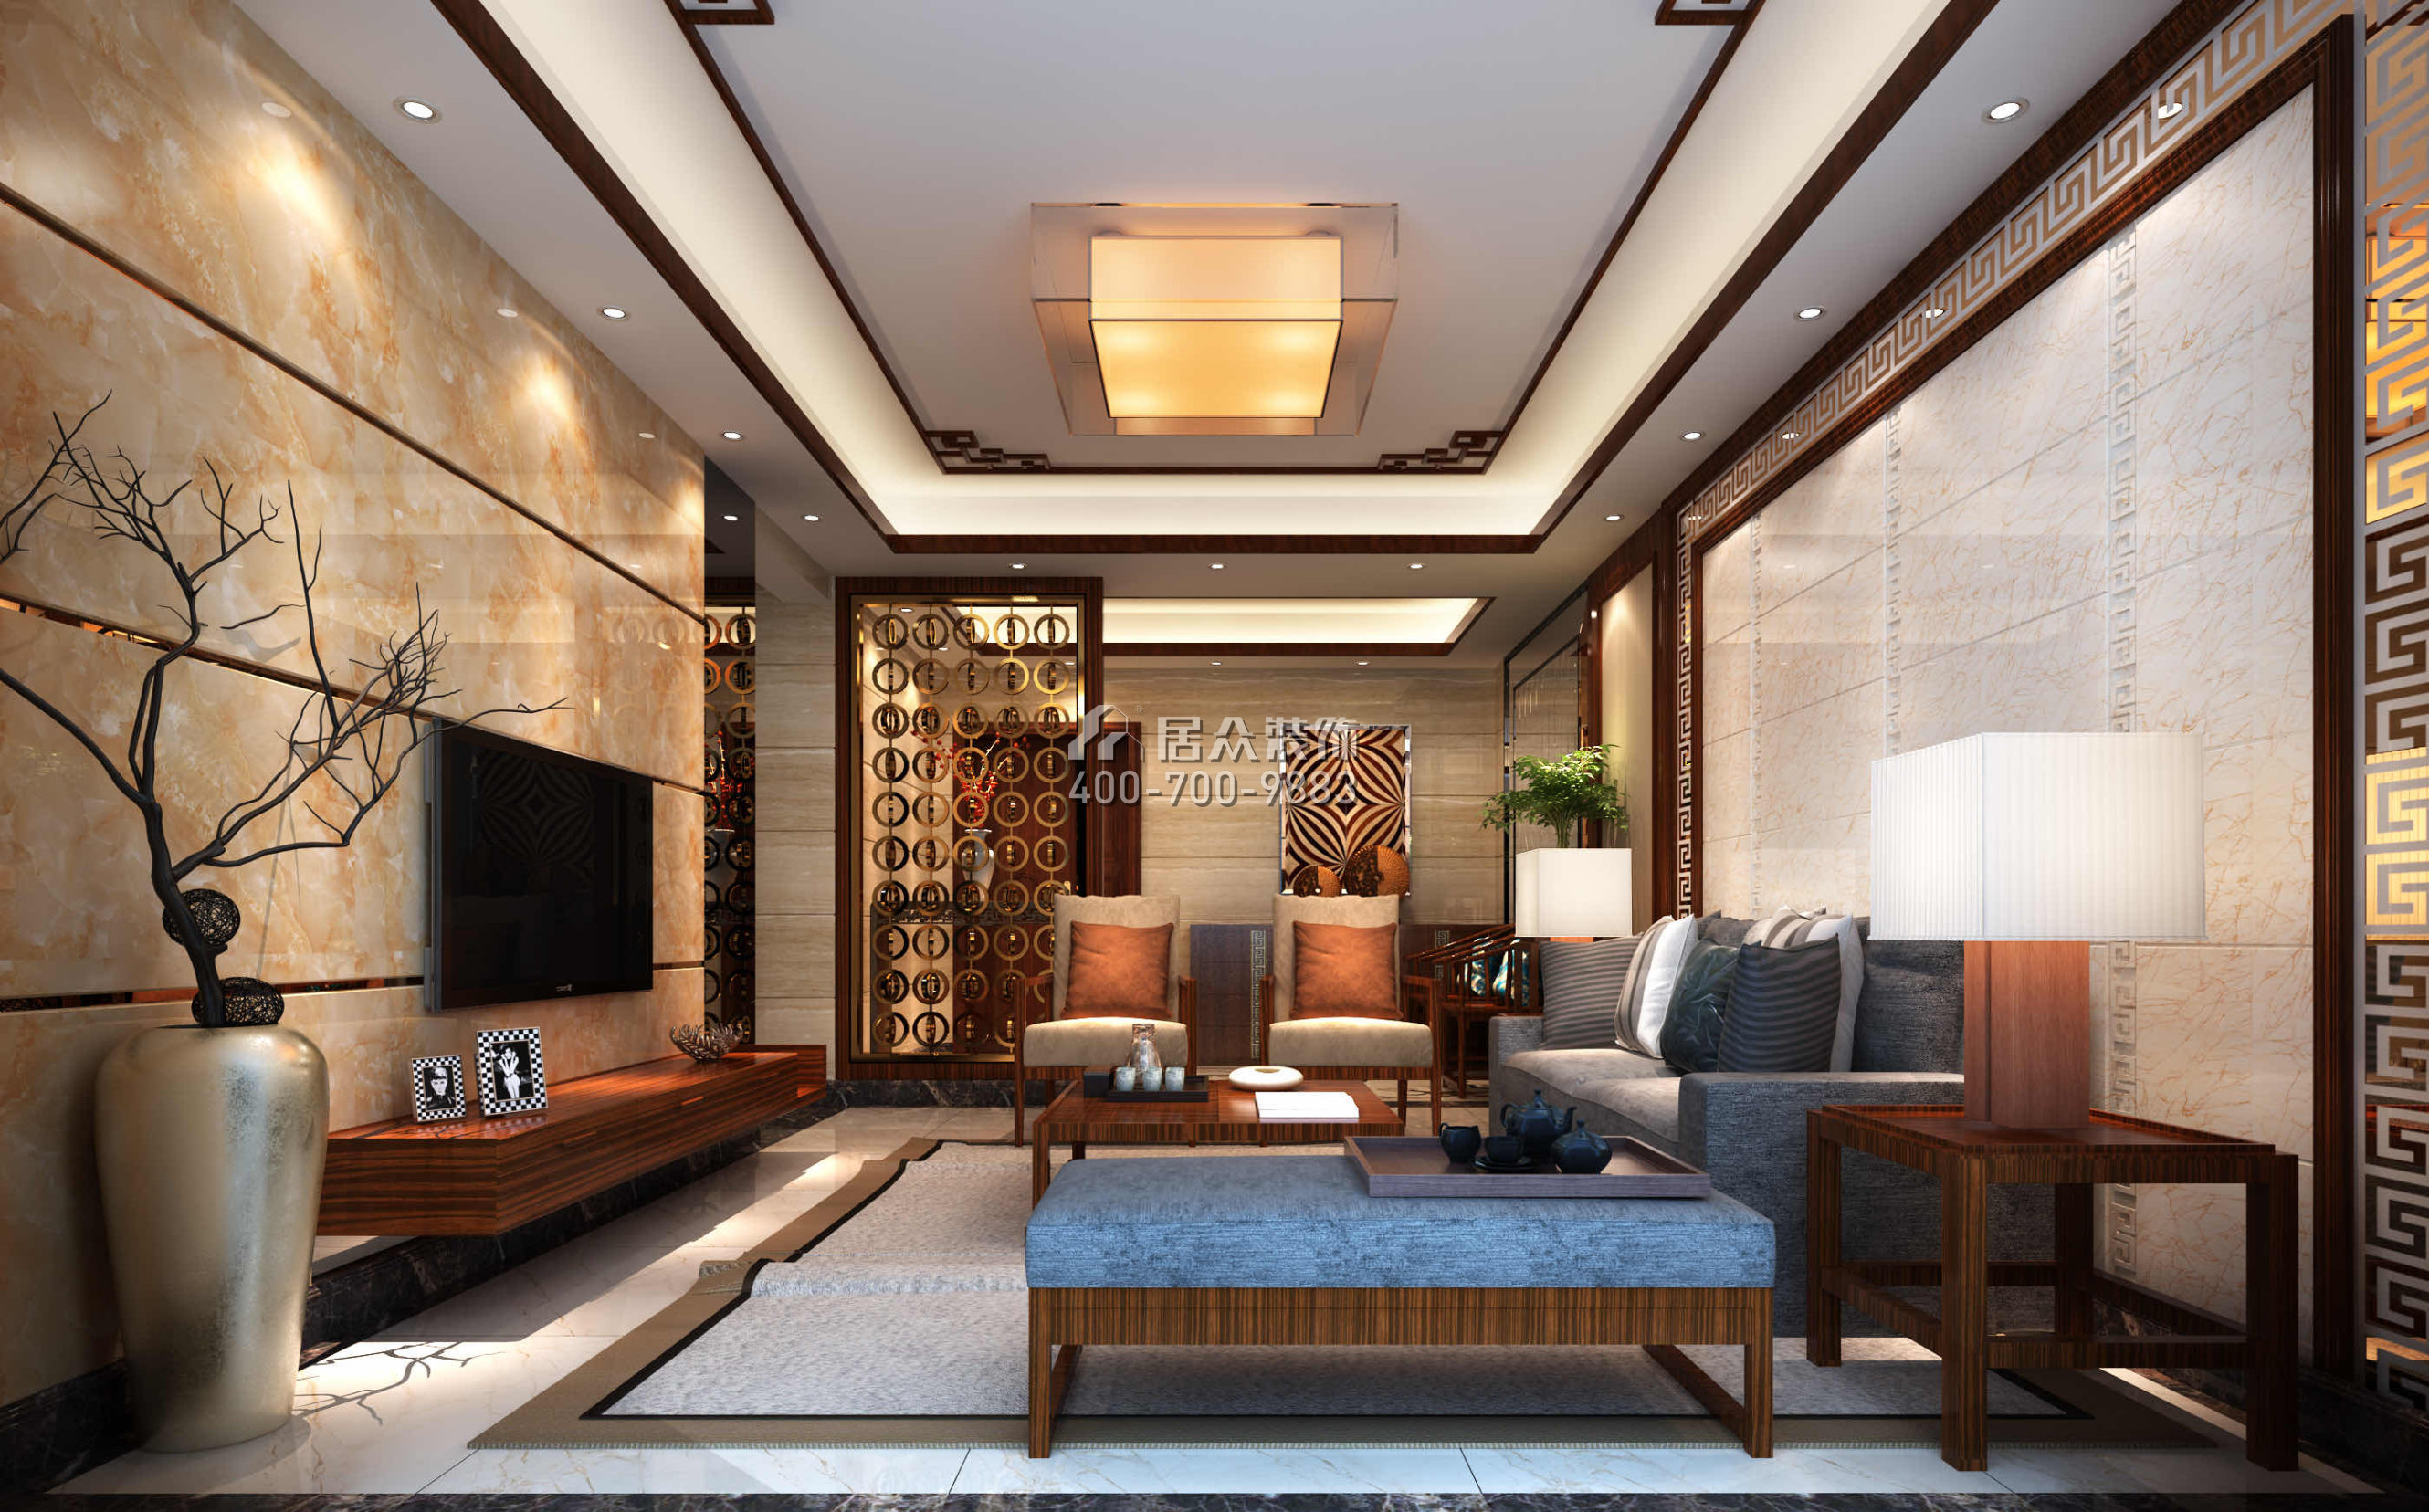 凯因新城天誉250平方米中式风格复式户型客厅装修效果图